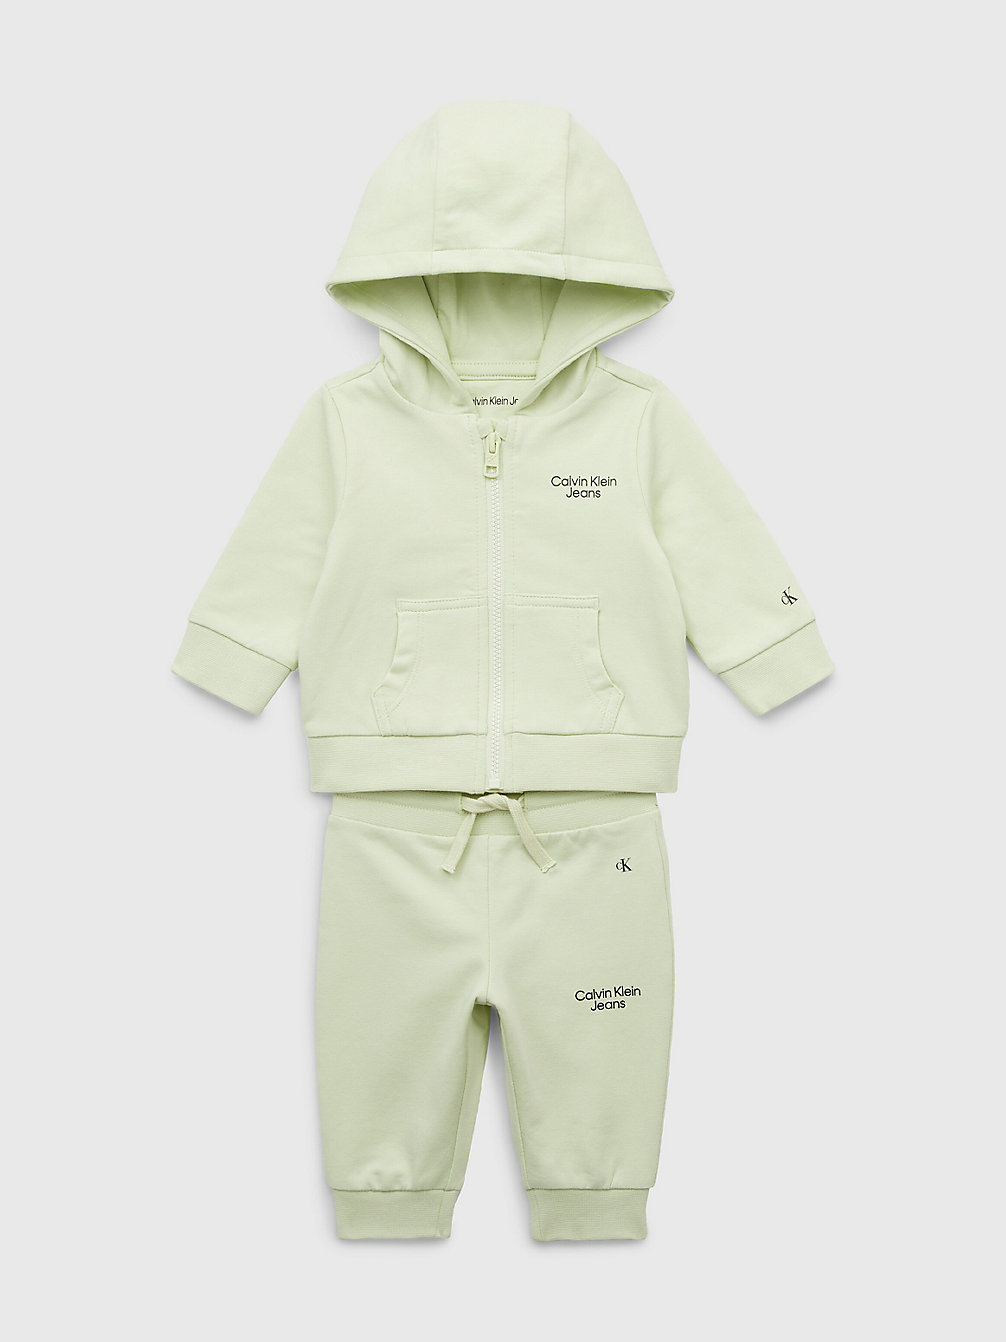 SEAFOAM GREEN > Спортивный костюм для новорожденных из органического хло > undefined newborn - Calvin Klein